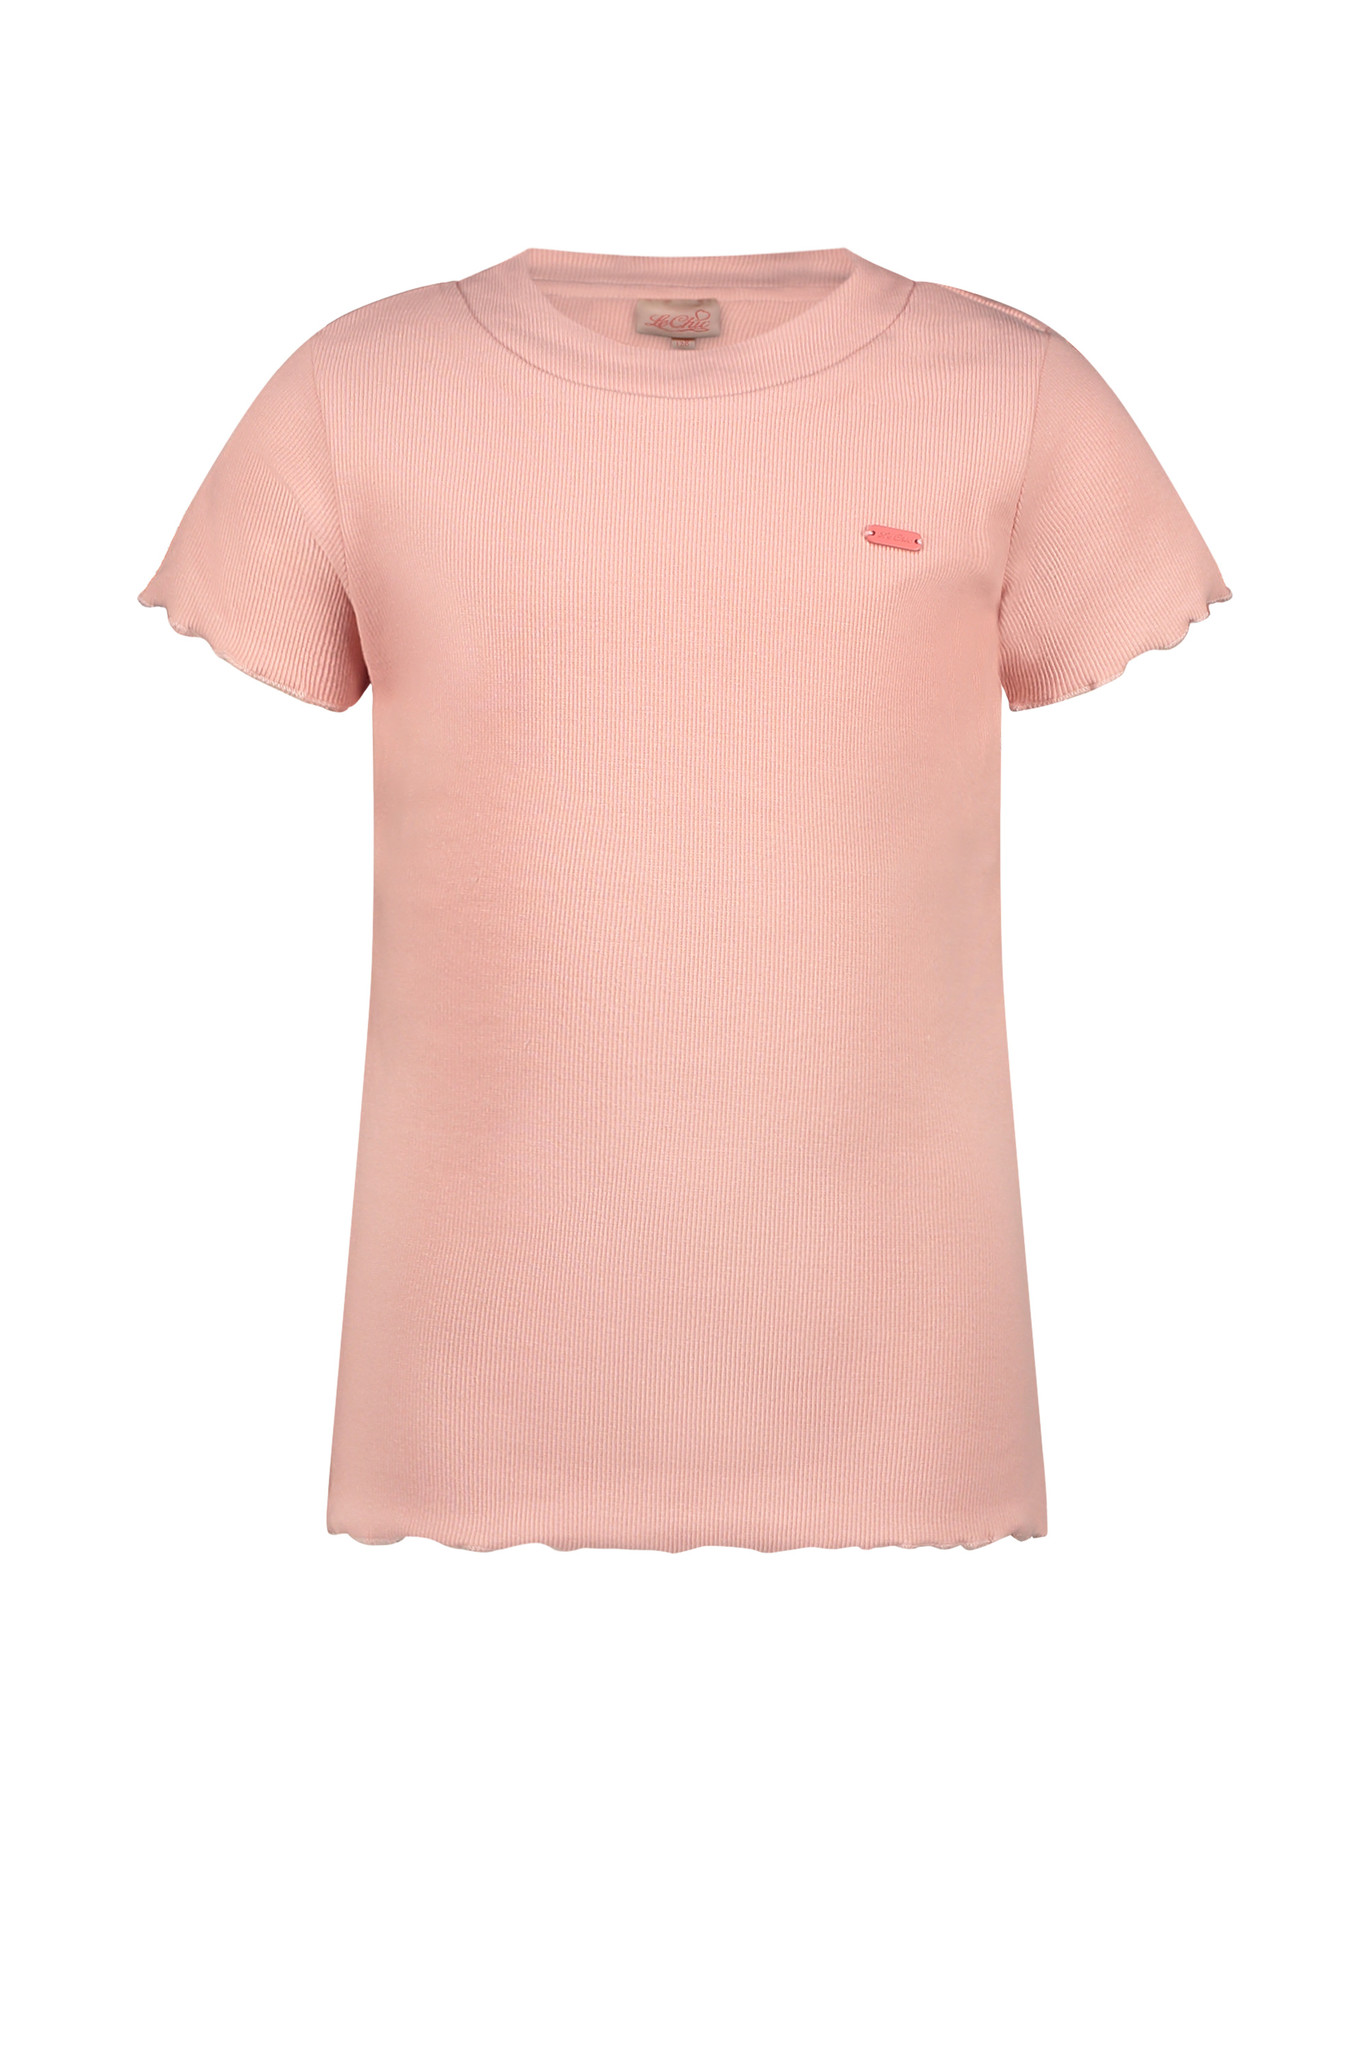 Le Chic Meisjes t-shirt - Pink Lemonade